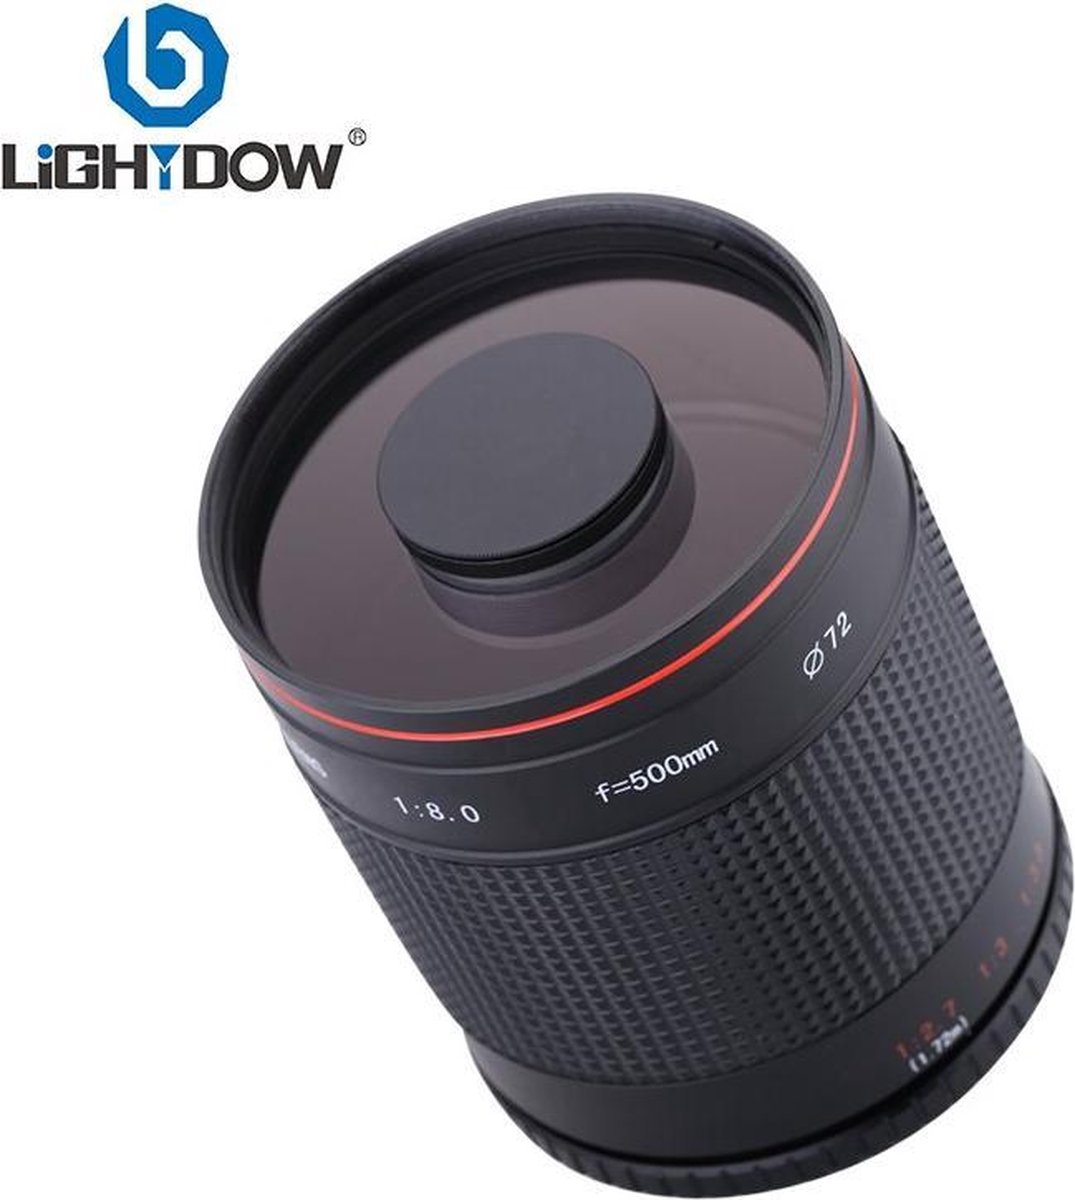 Lightdow 500mm f8.0 super telezoom spiegellens voor Canon EOS EF body's